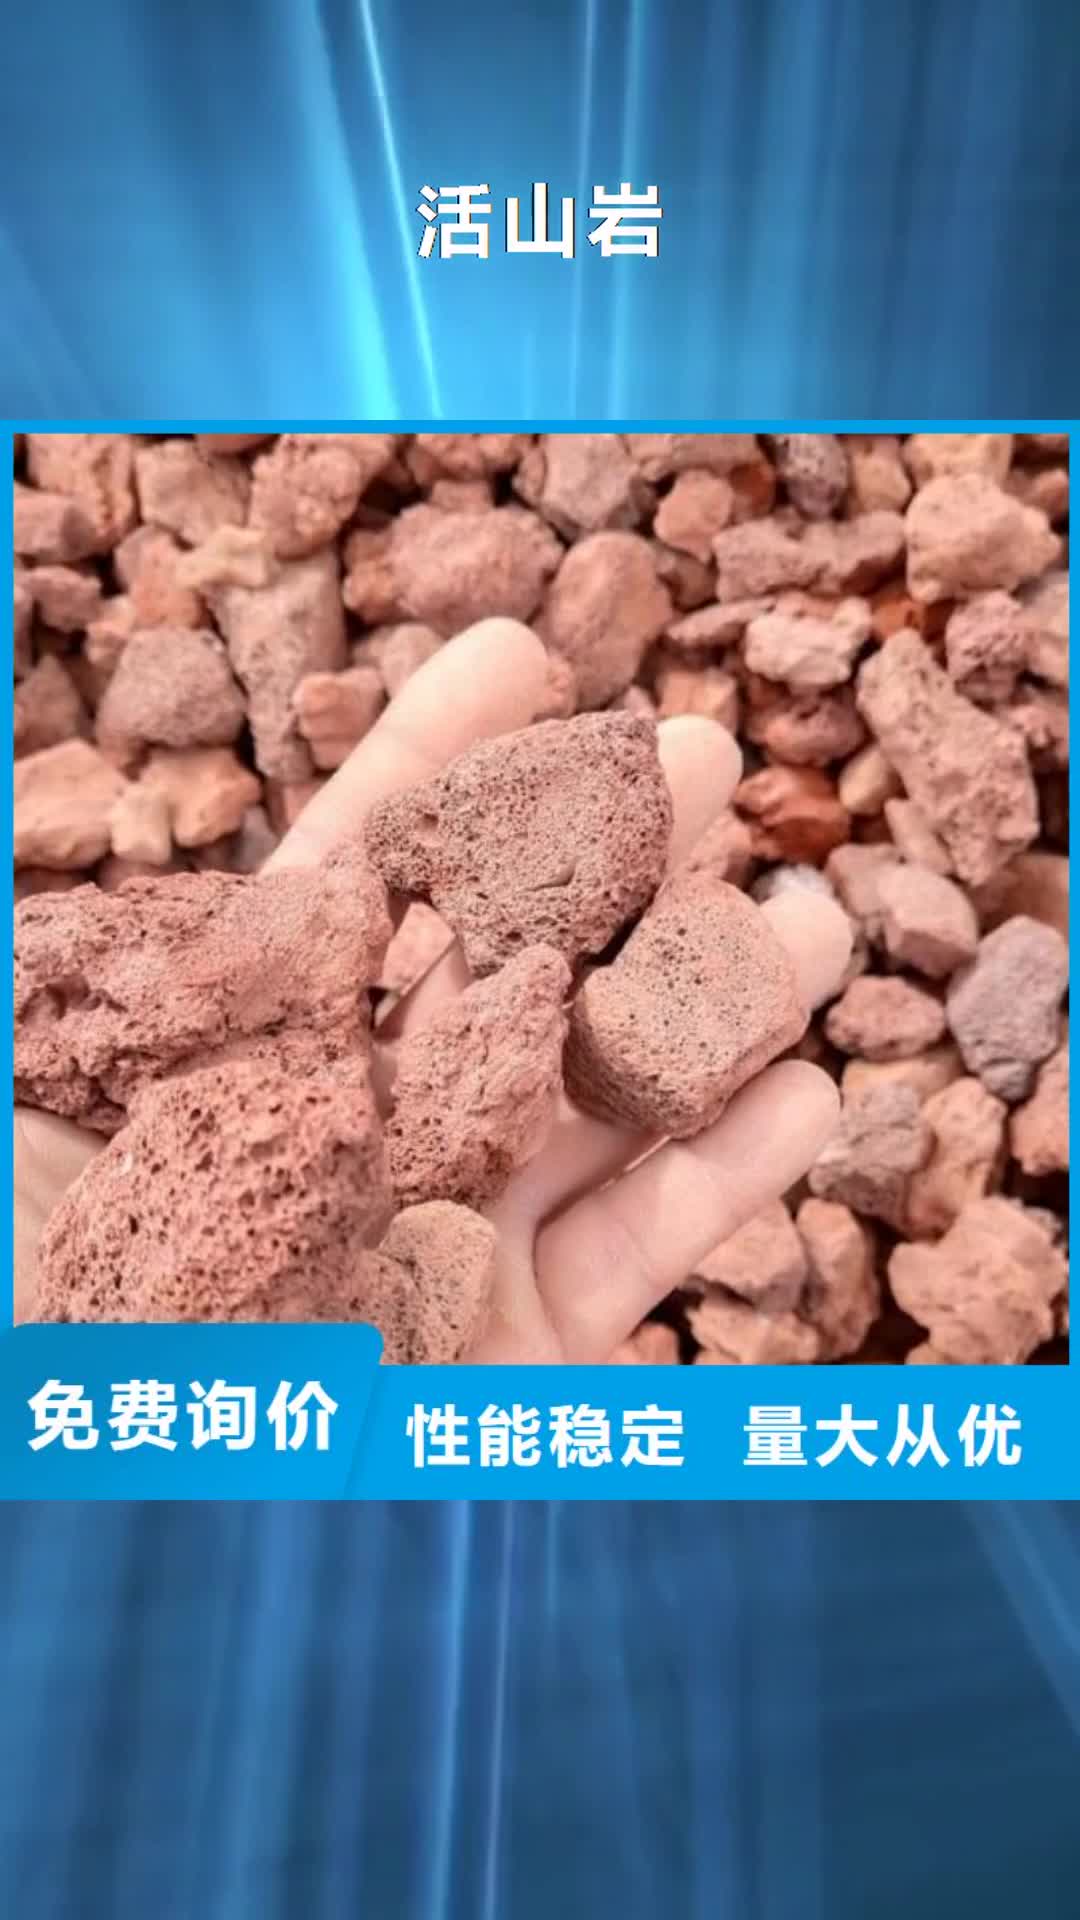 北京【活山岩】,聚丙烯酰胺设计合理